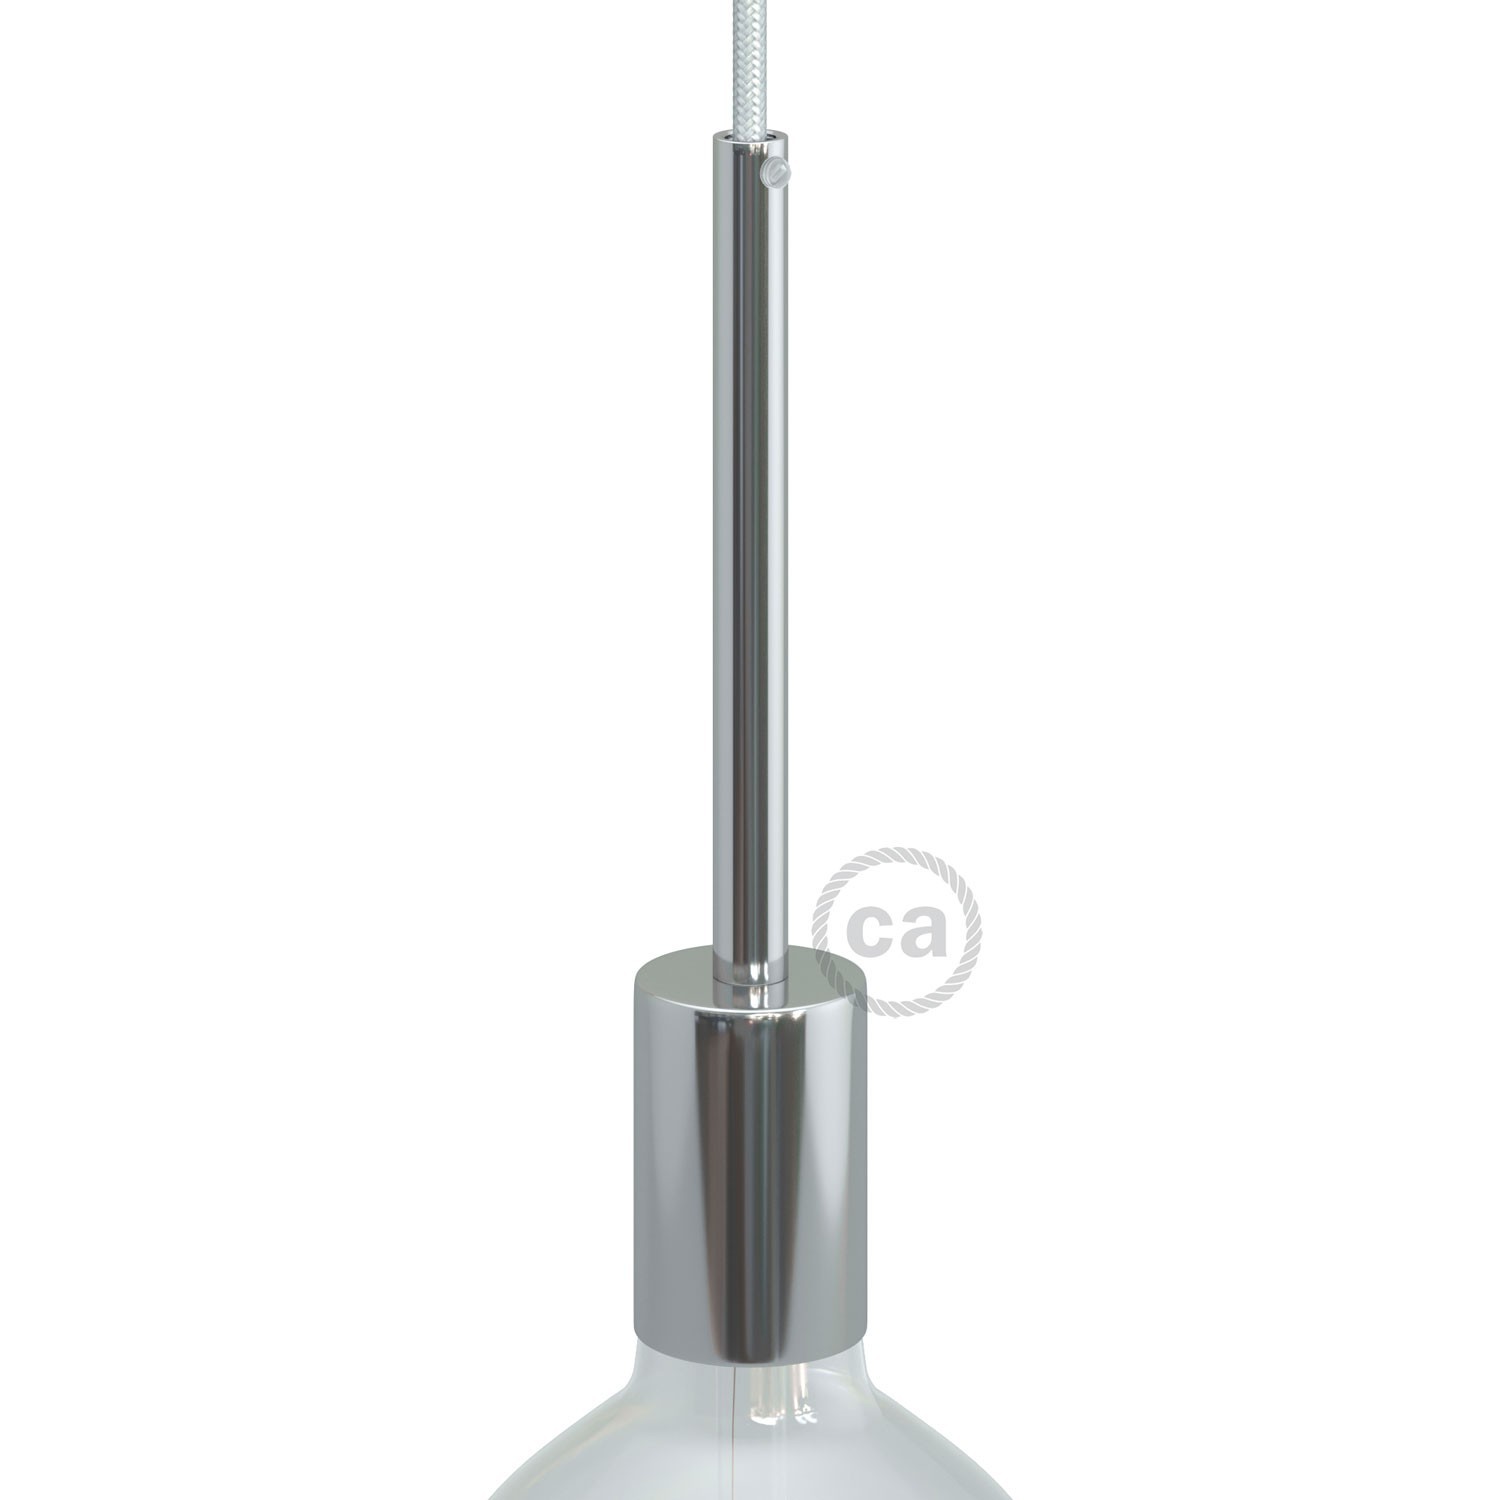 Kit cylindrisk lamphållare E27 i metall med 15 cm lång dravaglastare